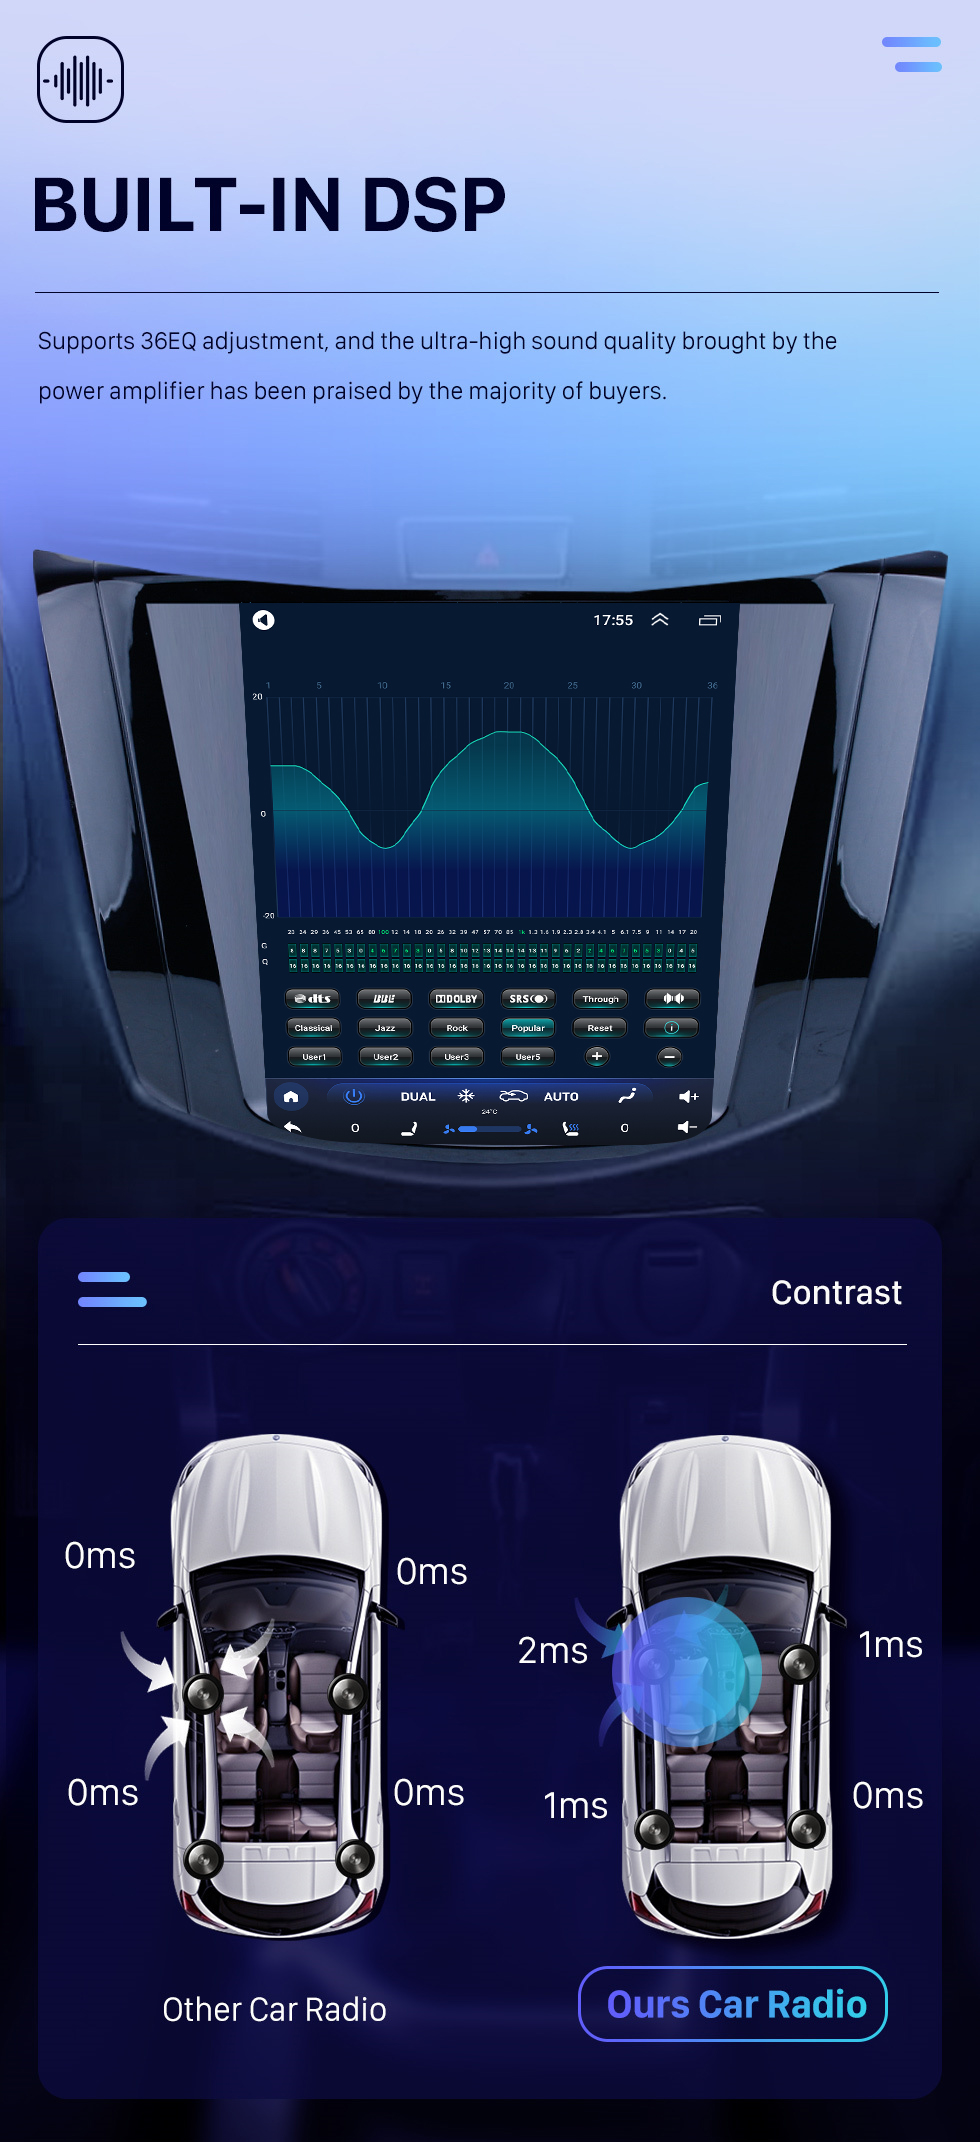 Seicane OEM HD Touchscreen 9.7 polegadas Android 10.0 Rádio para 2018 Nissan NAVARA Terra Auto A/C com GPS Navi System Link do espelho Bluetooth música WIFI suporte OBD2 DVR SWC